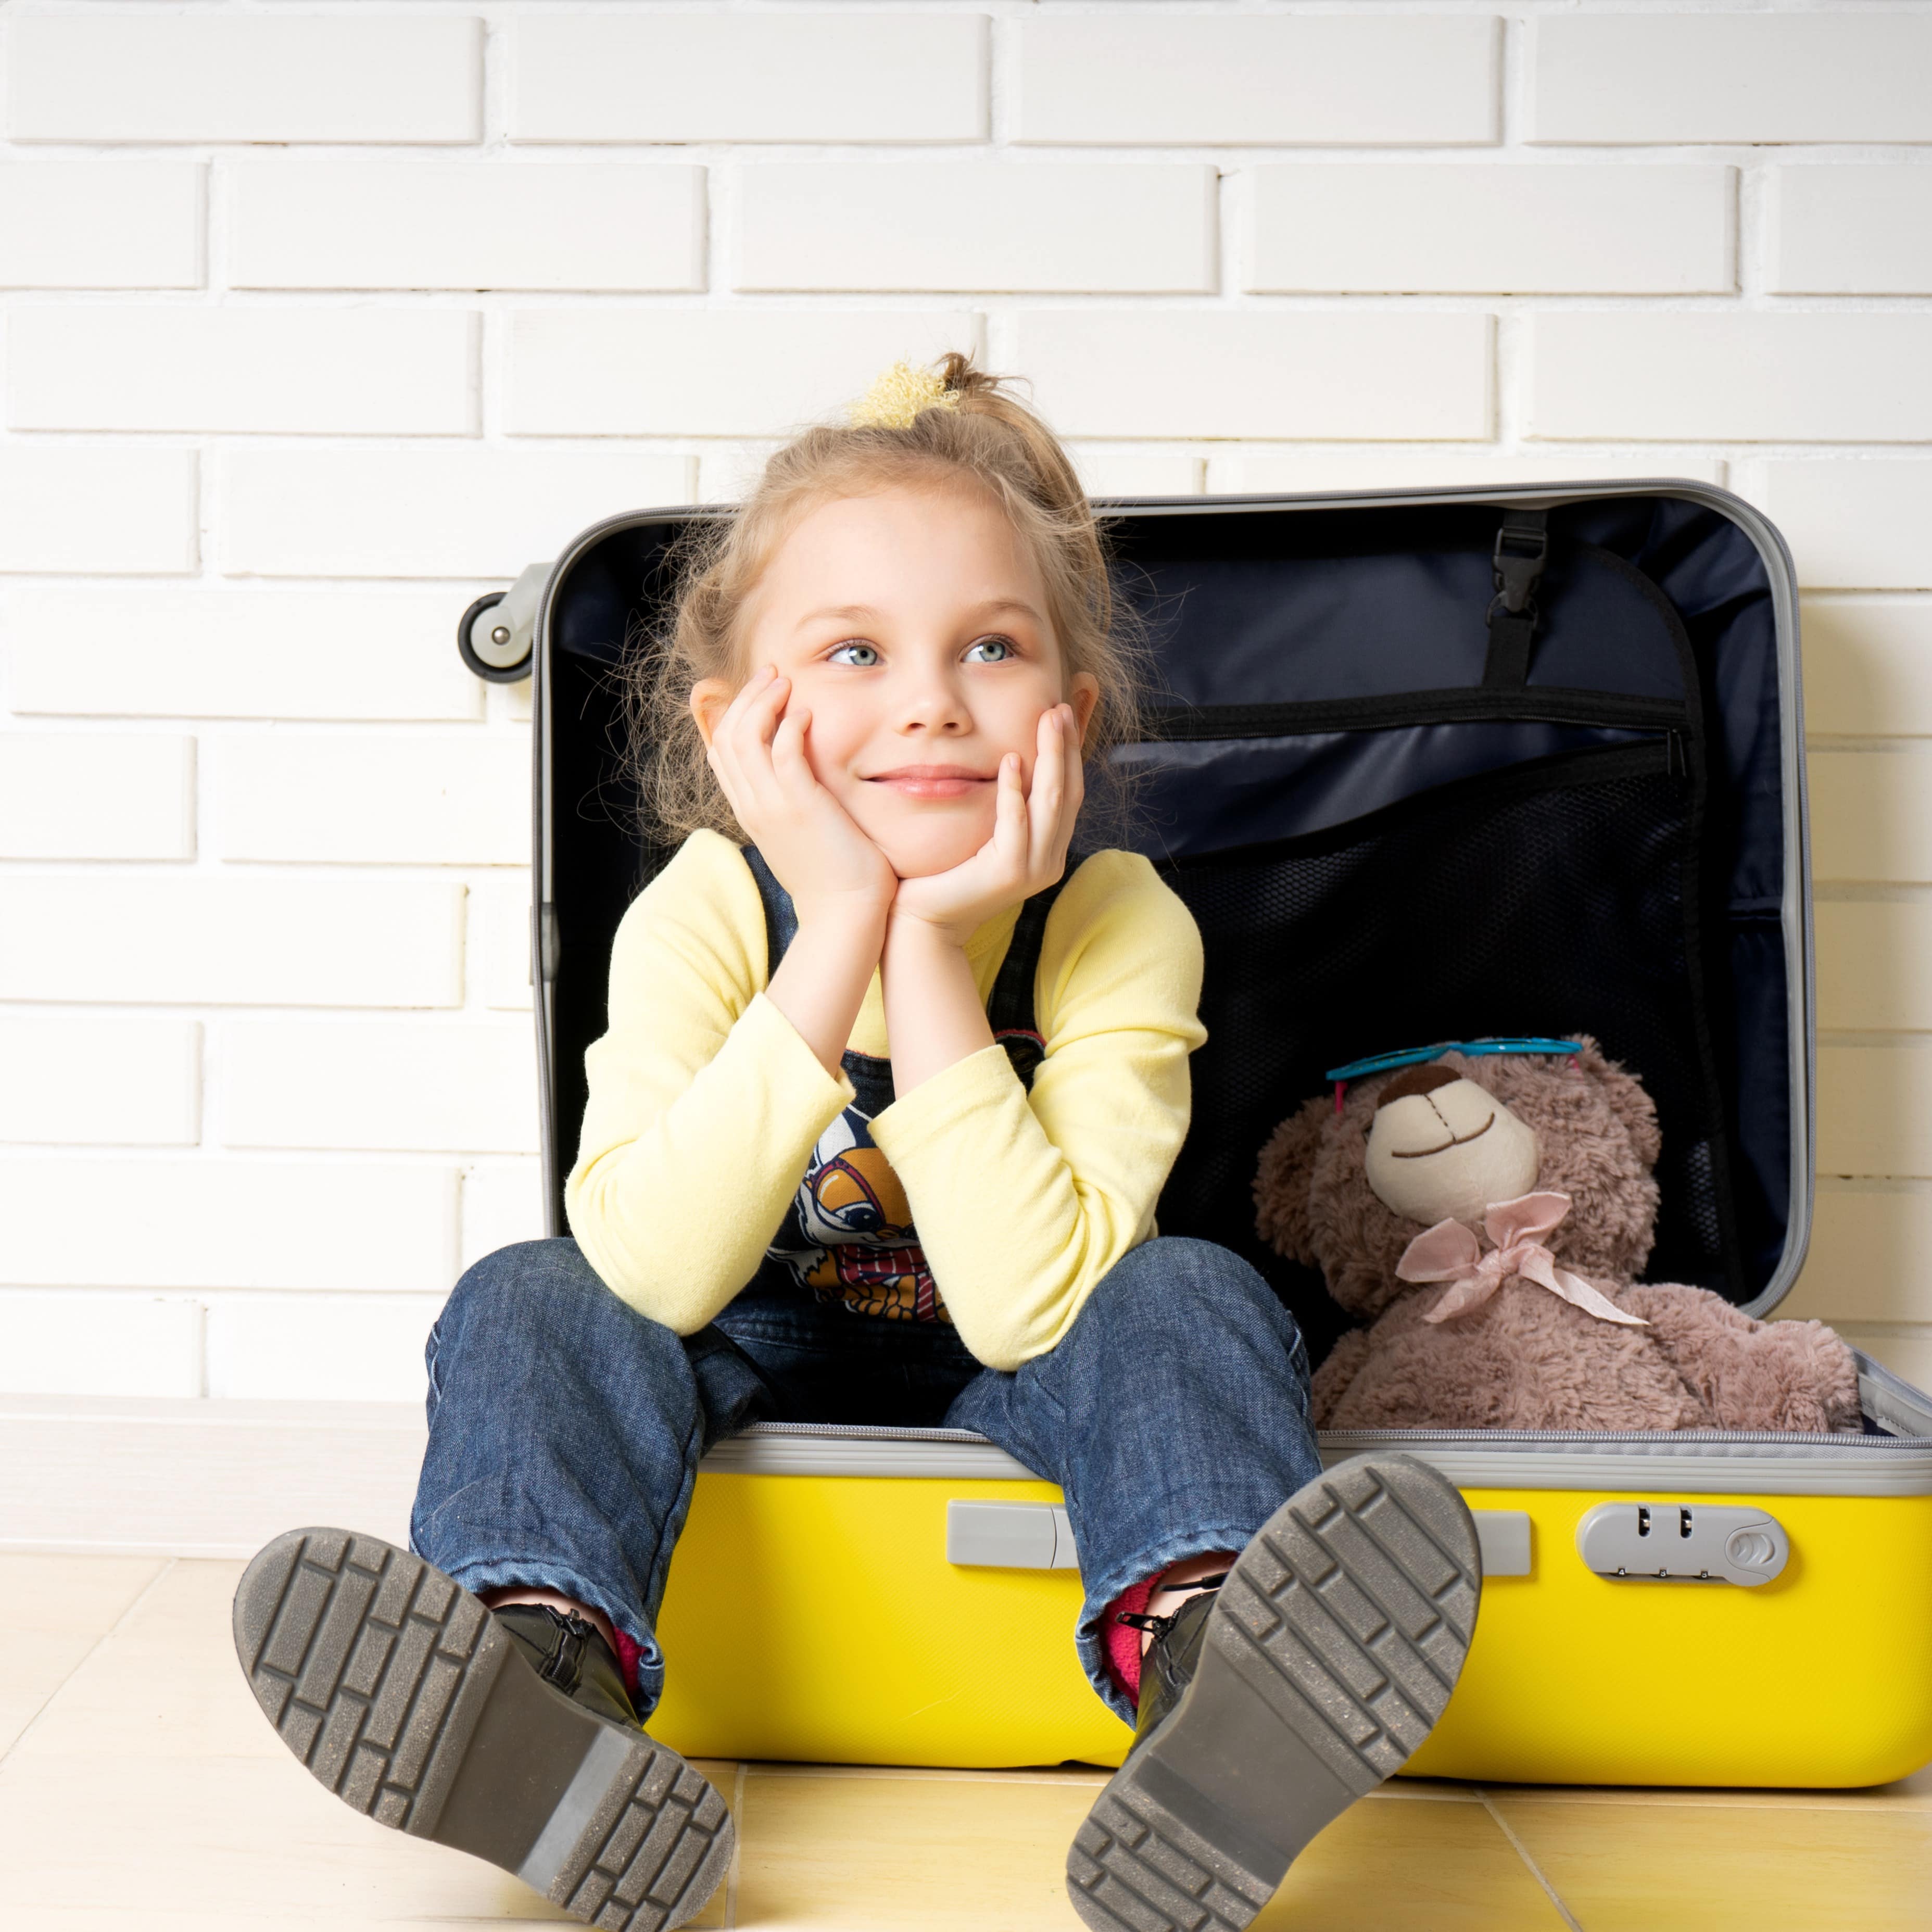 Ein Mädchen in Jeans und gelbem Pulli sitzt mit einem Teddy in einem geöffneten gelben Koffer.